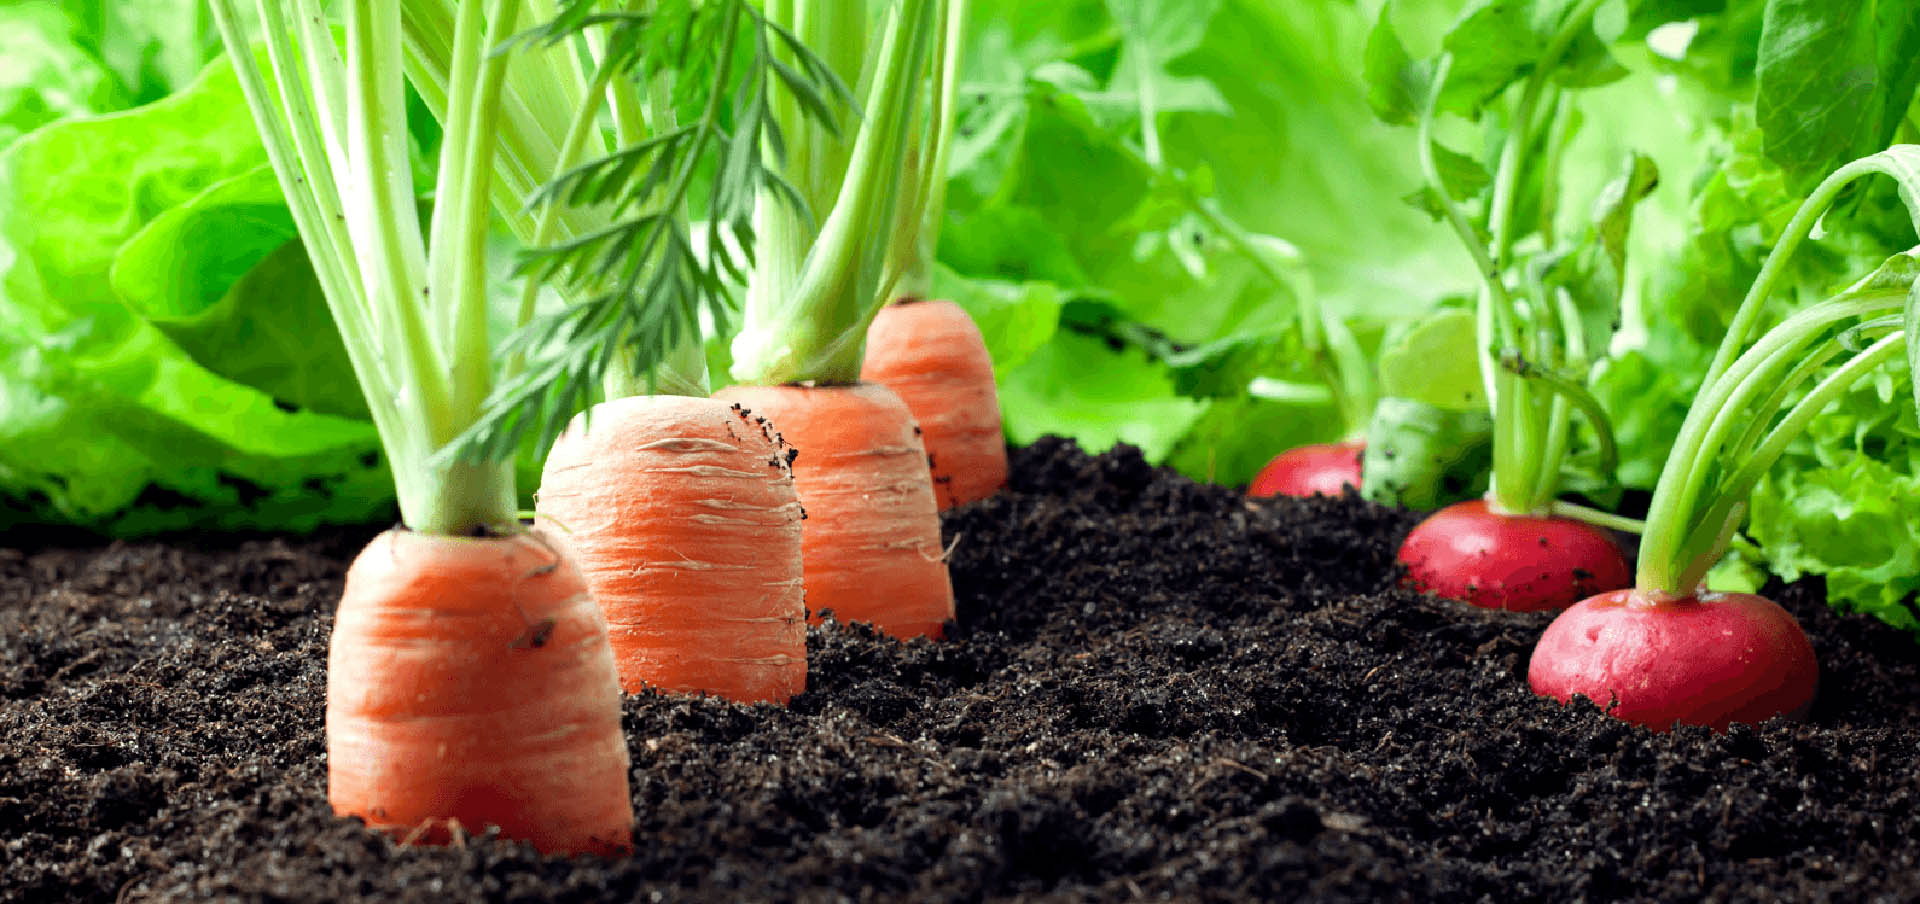 7 Gardening Tips that Work for Winnipeg Vegetables Image